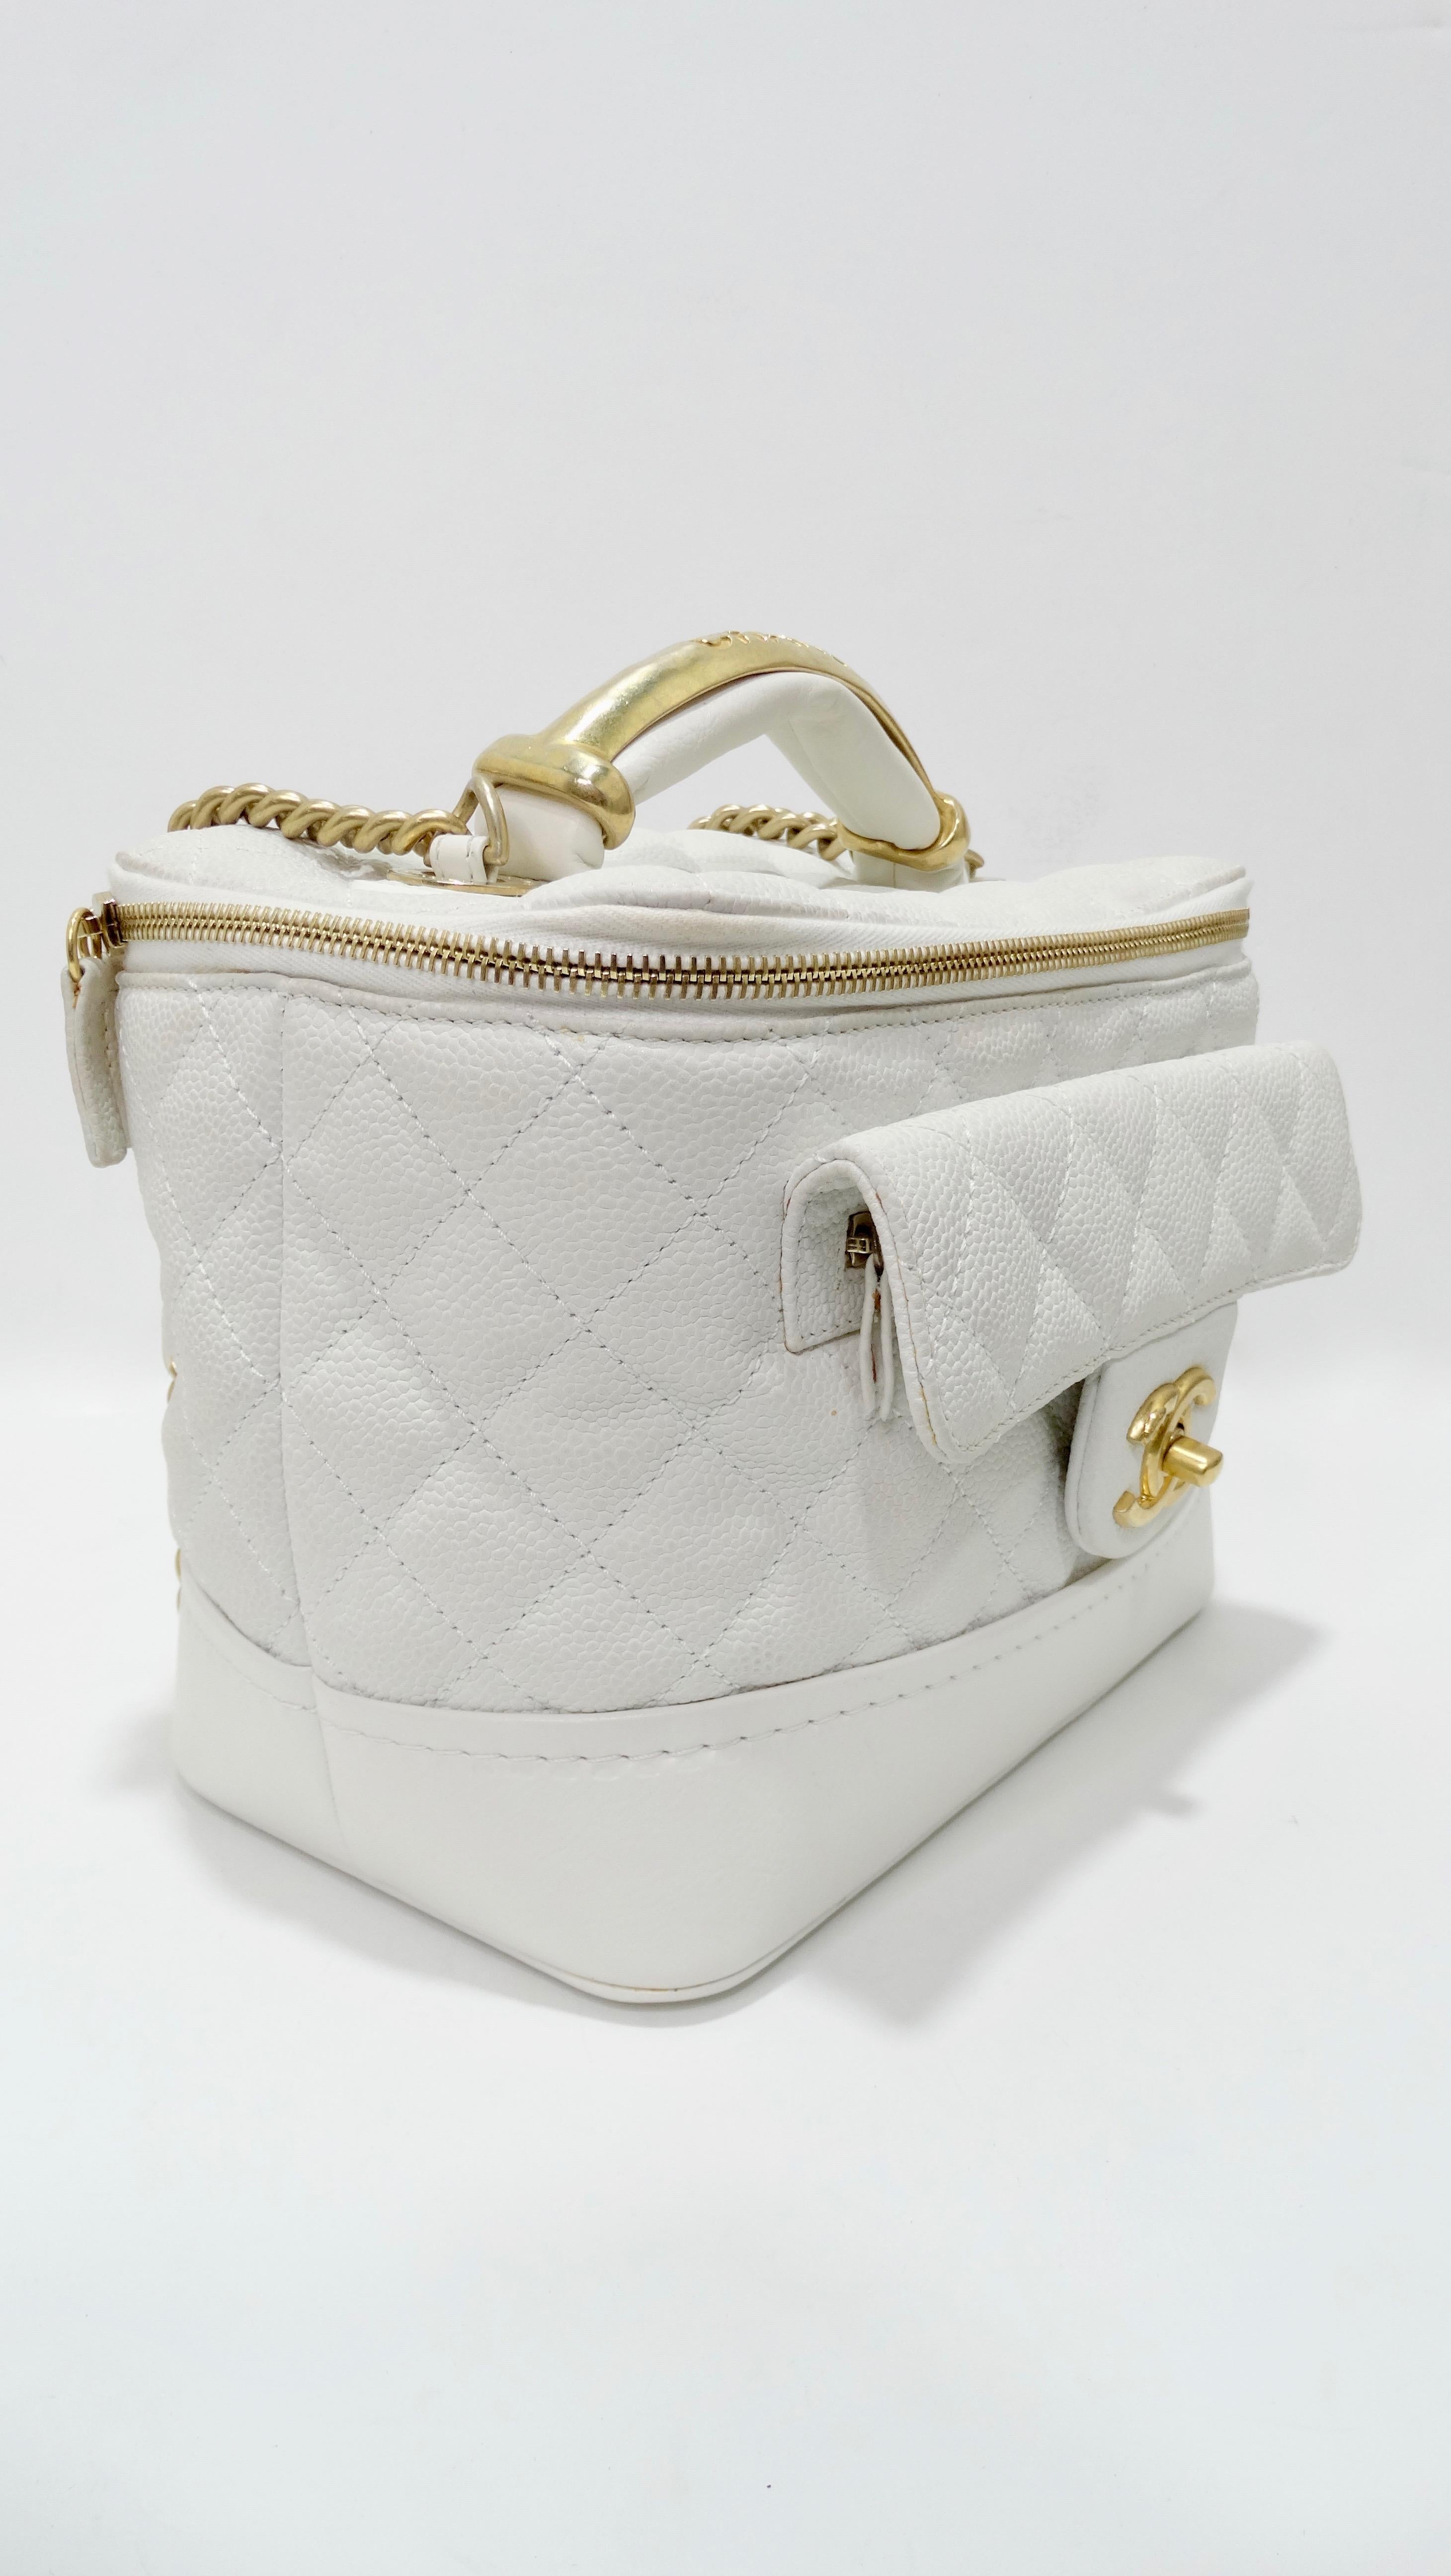 Chanel Vanity White Globe Trotter Bag 2013 Fall/Winter  6